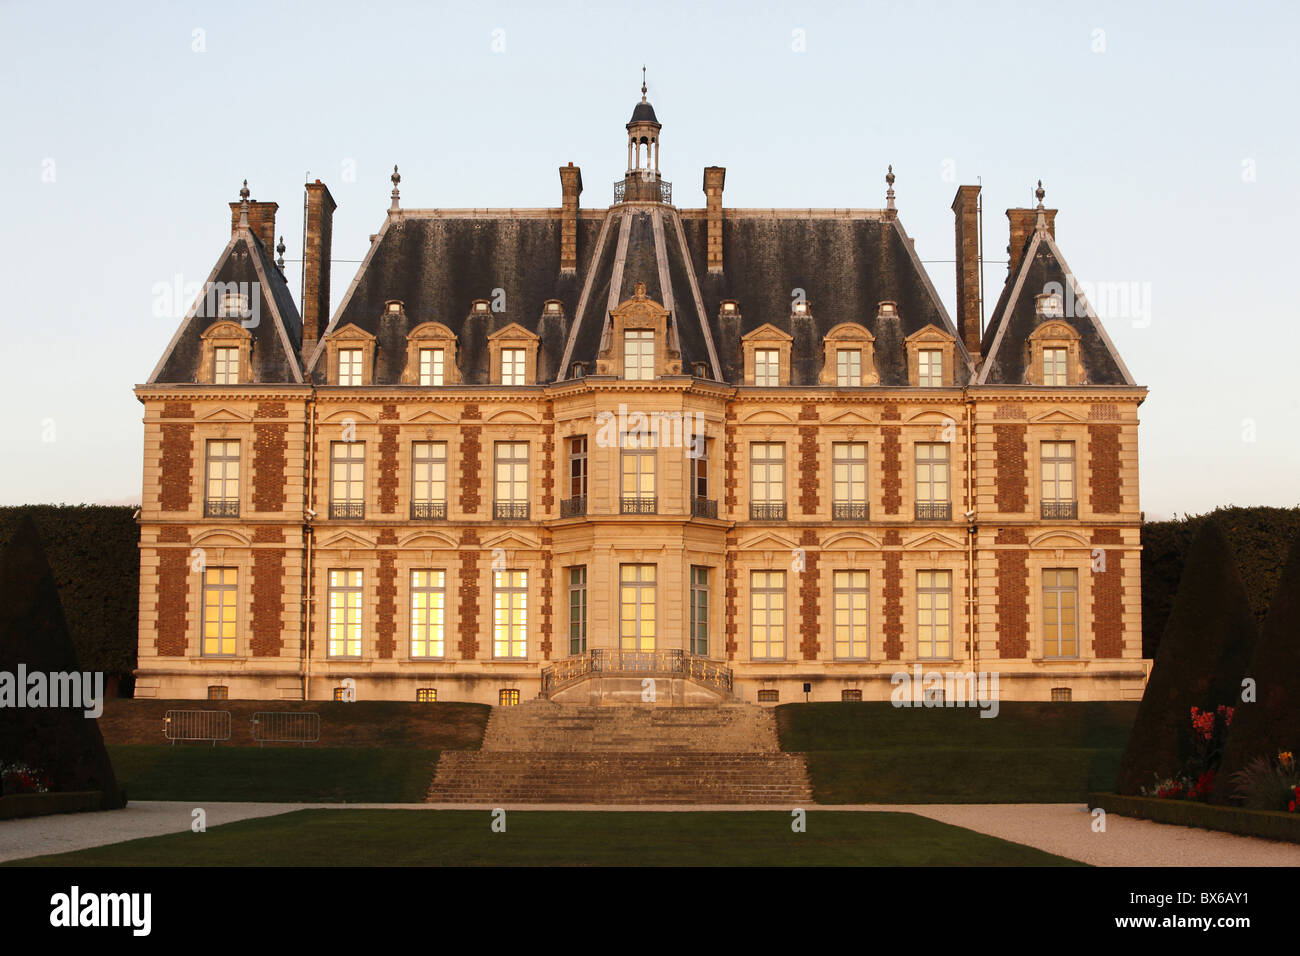 Chateau de Sceaux, Sceaux, Hauts-de-Seine, France, Europe Stock Photo